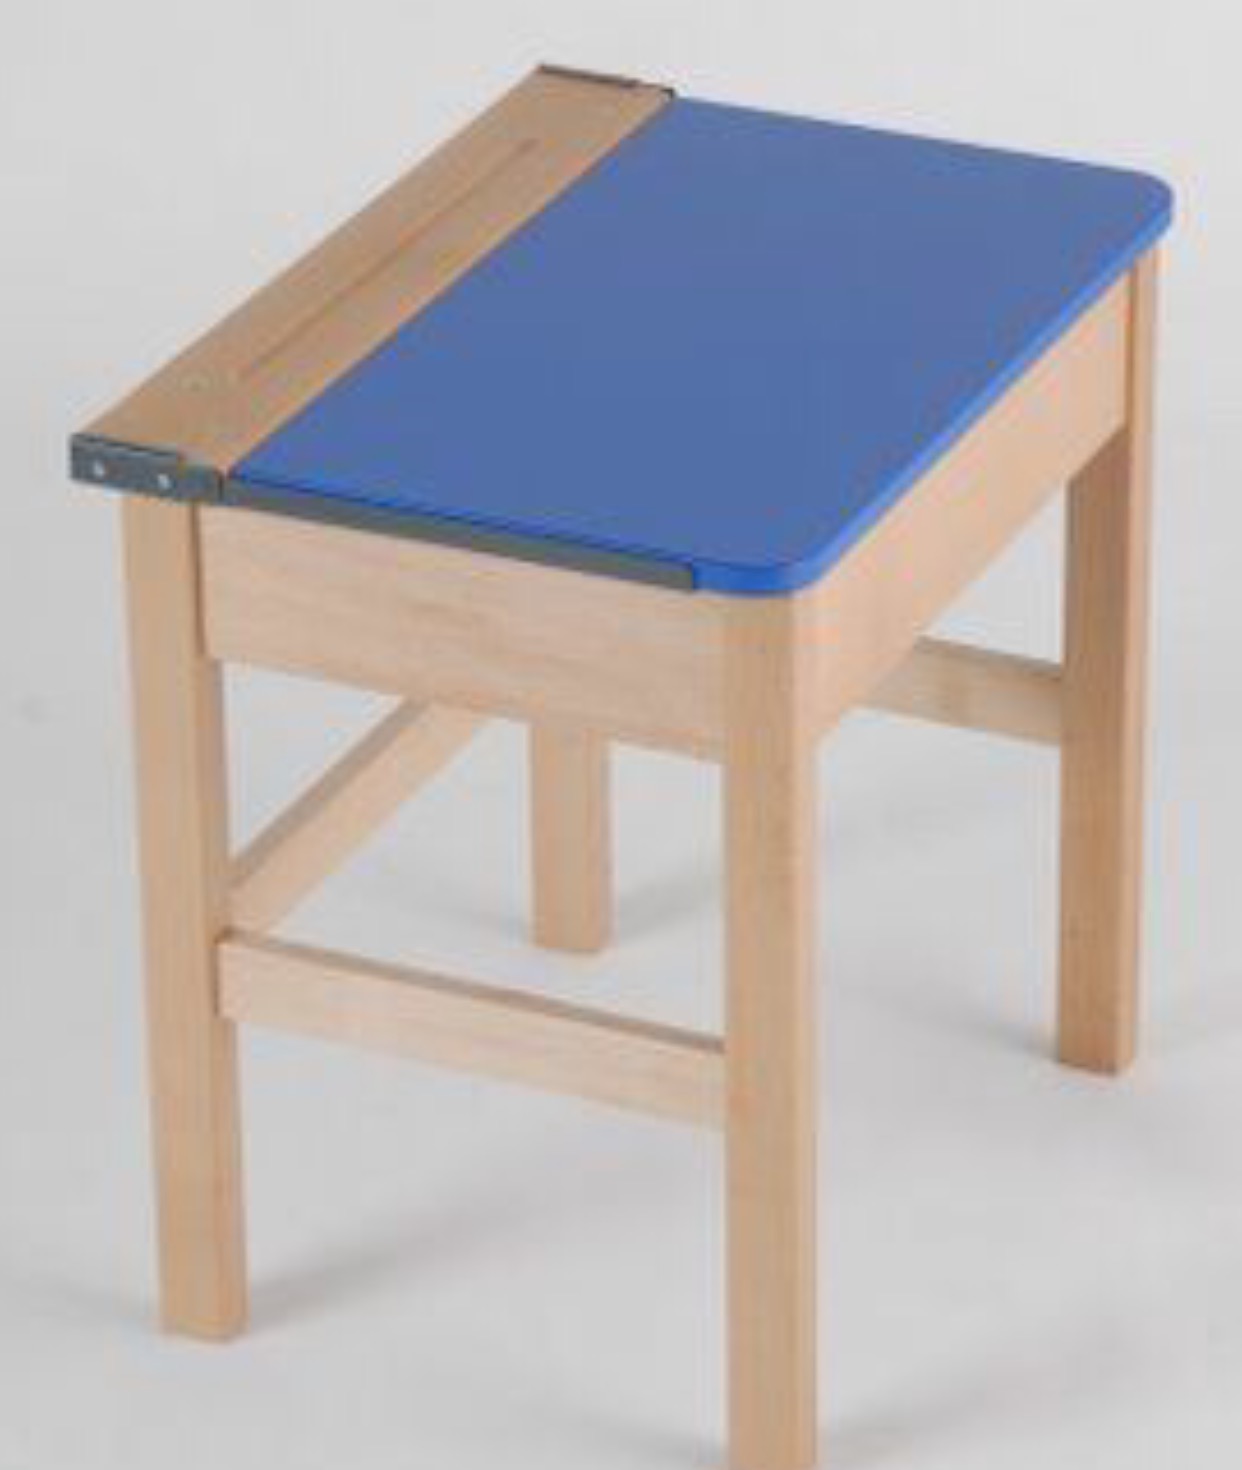 Beech Single Locker Wooden Desk with Blue Top 700h